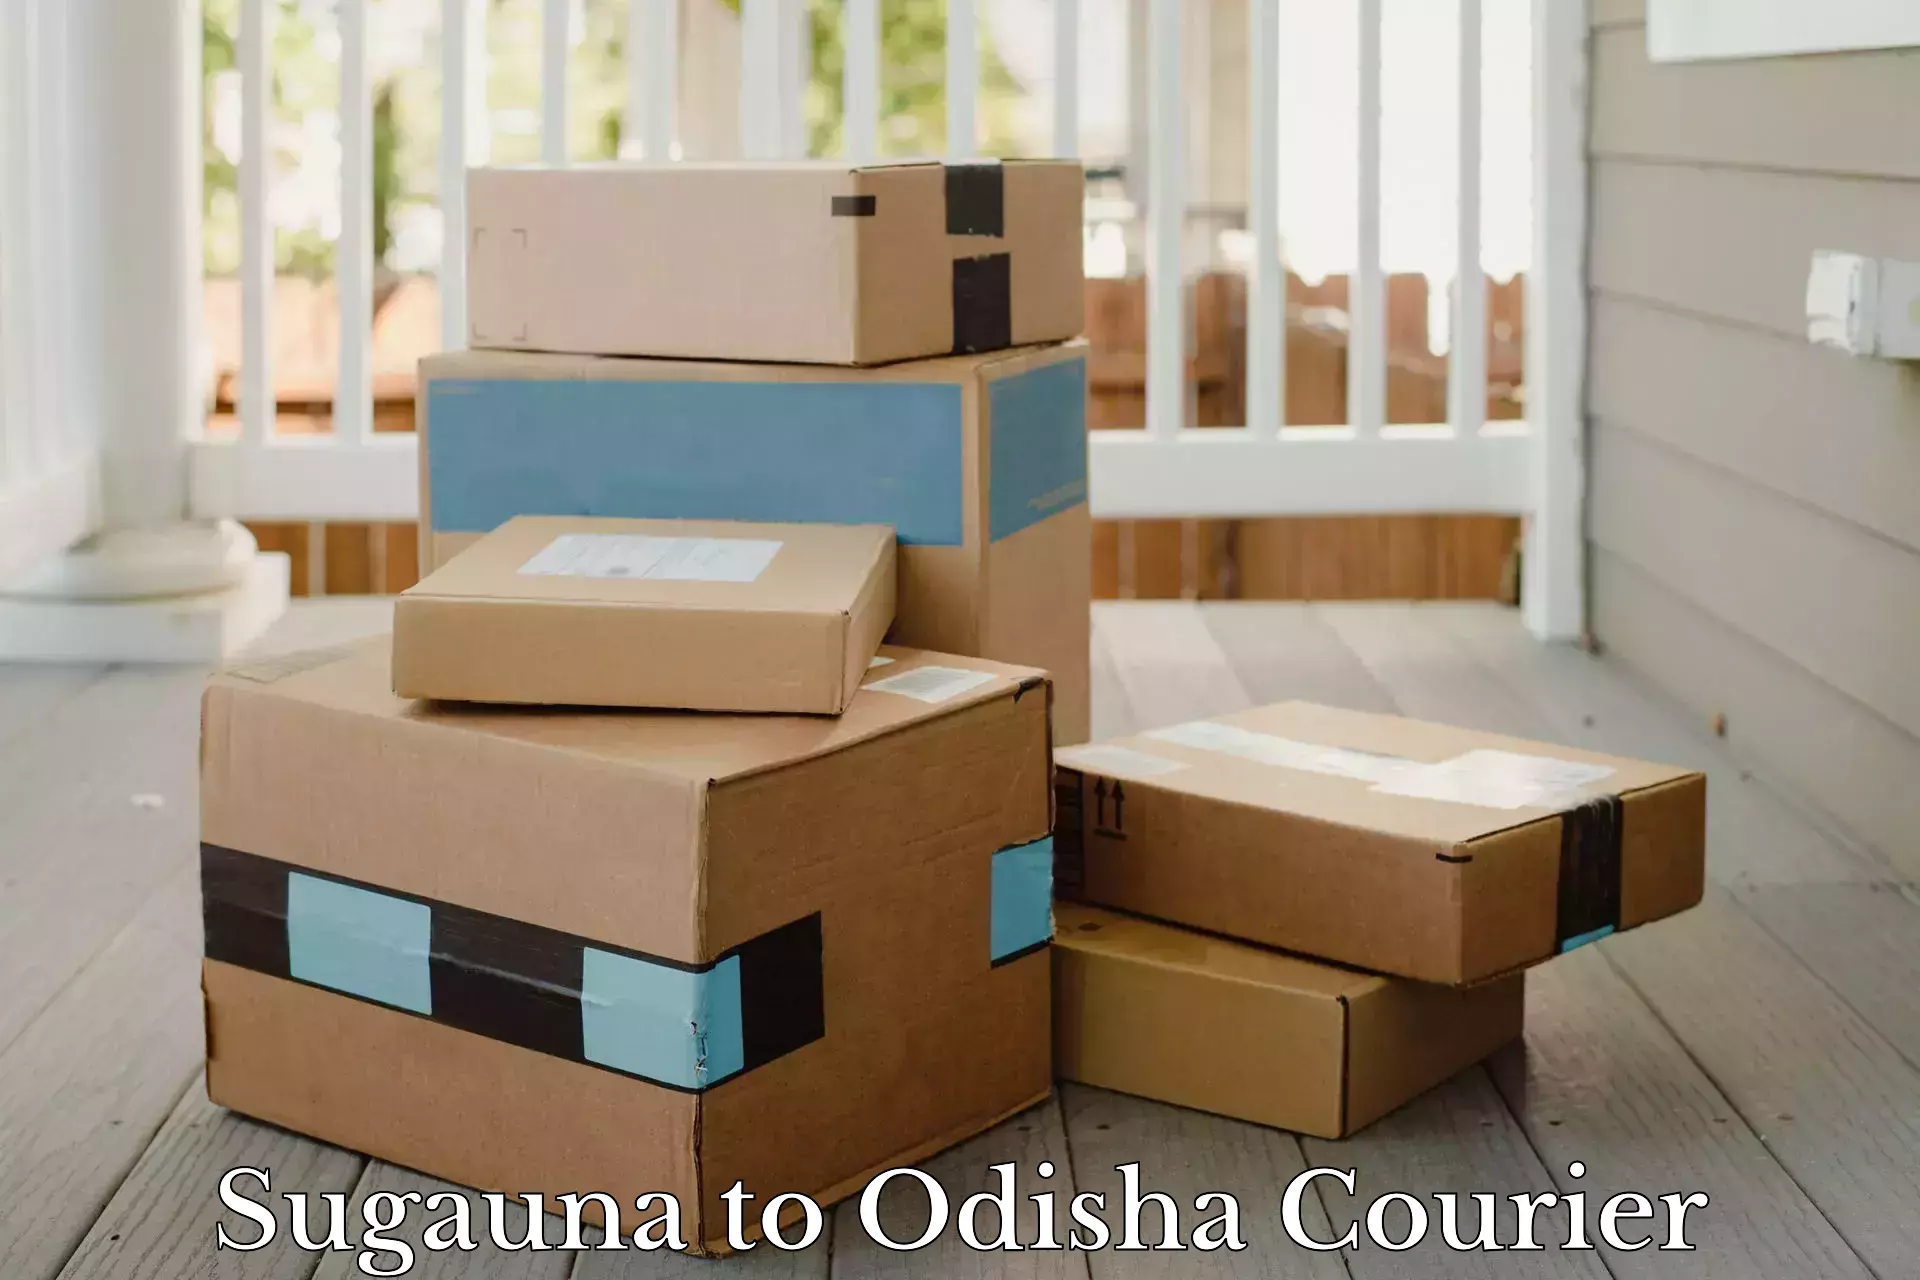 Flexible delivery schedules Sugauna to Odisha